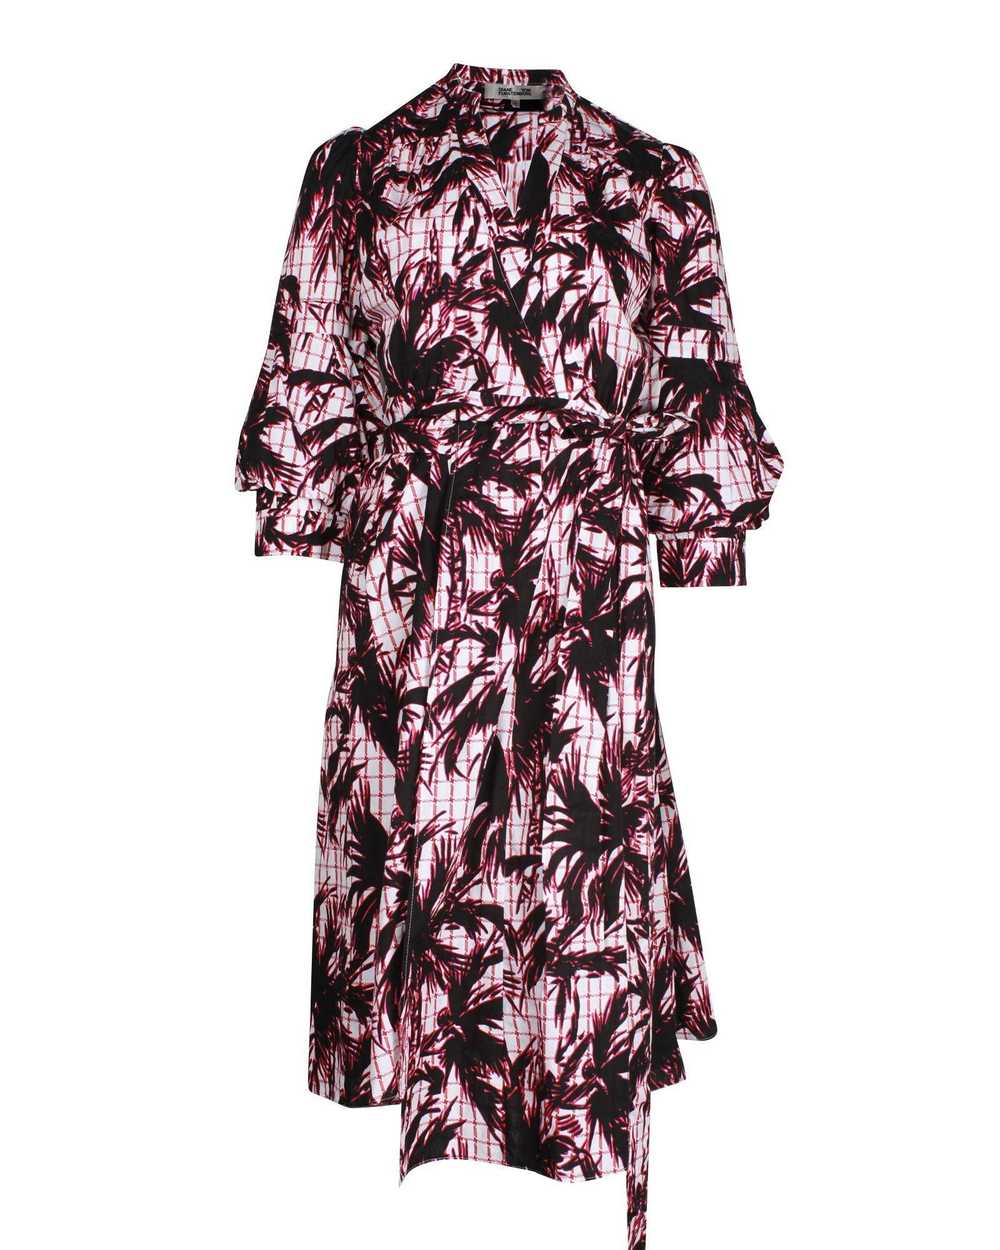 Diane von Furstenberg Print Wrap Dress - image 1